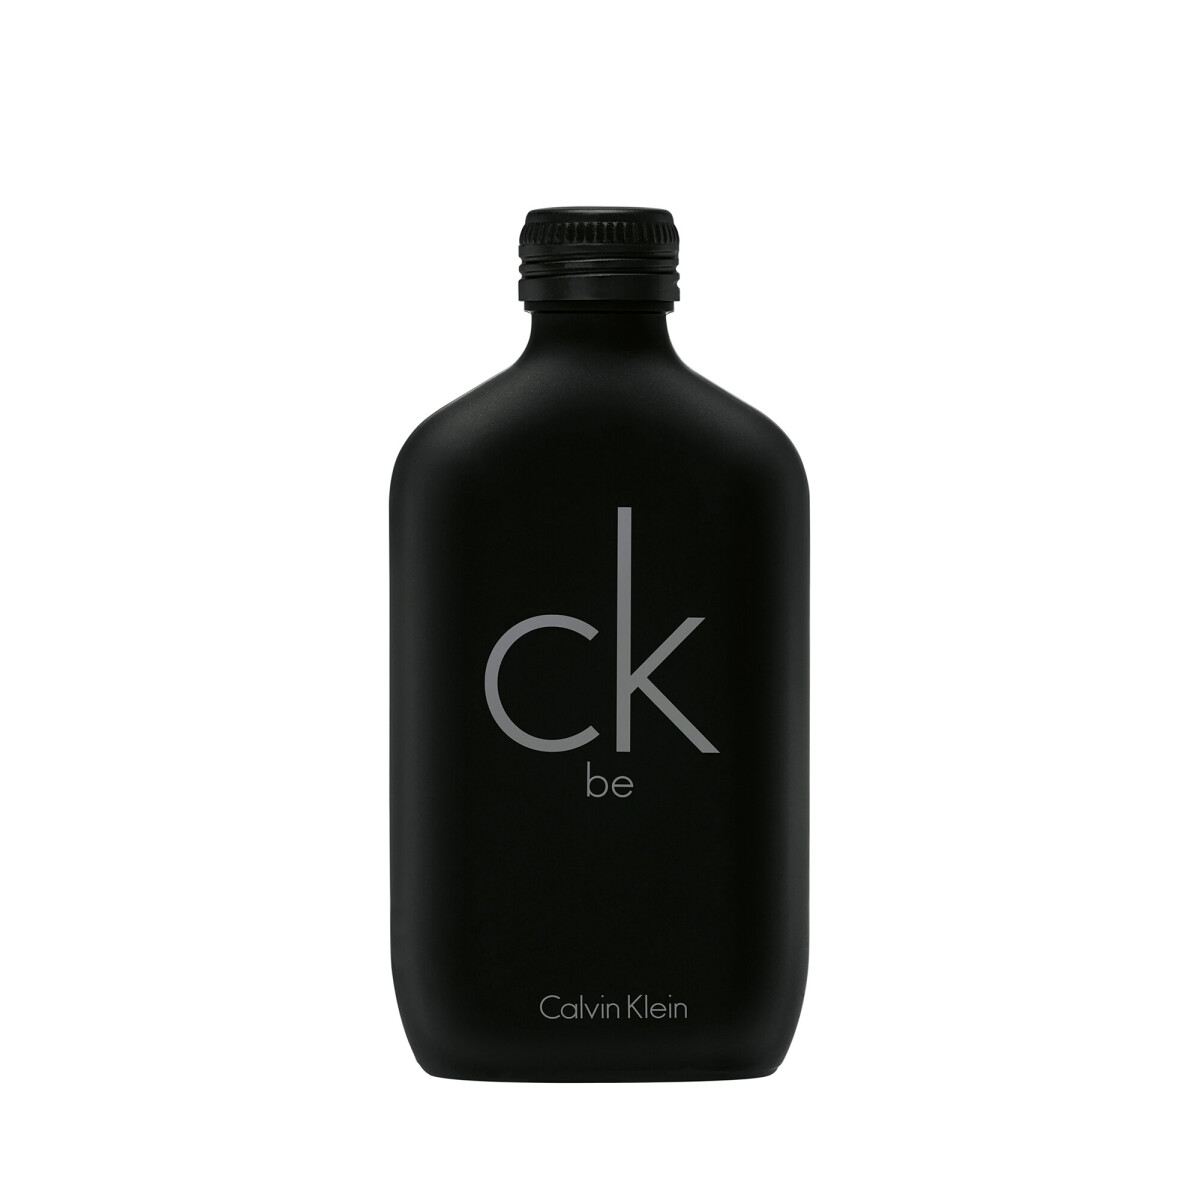 Calvin Klein CK BE EDT 100 ml 